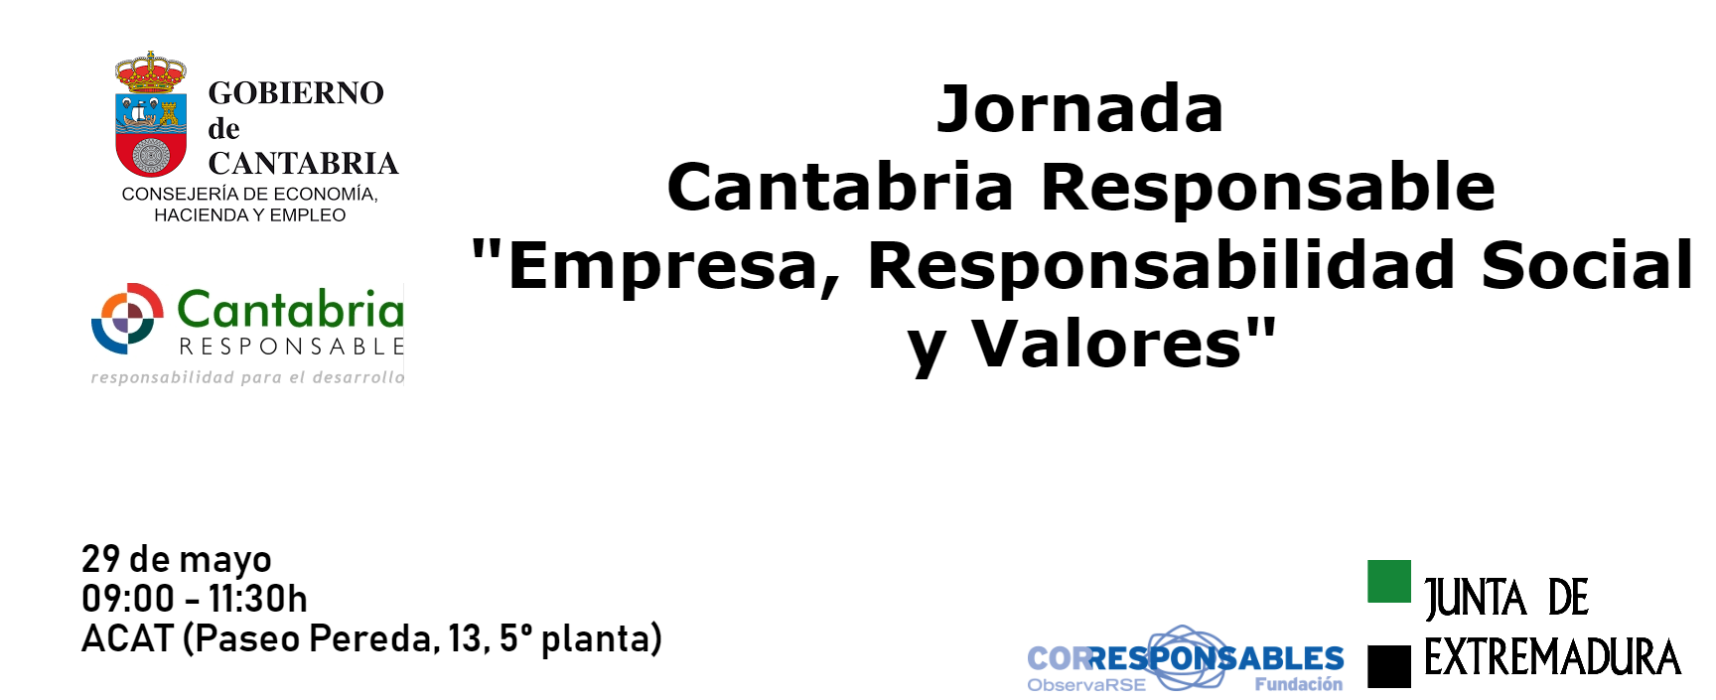 Jornada Cantabria Responsable